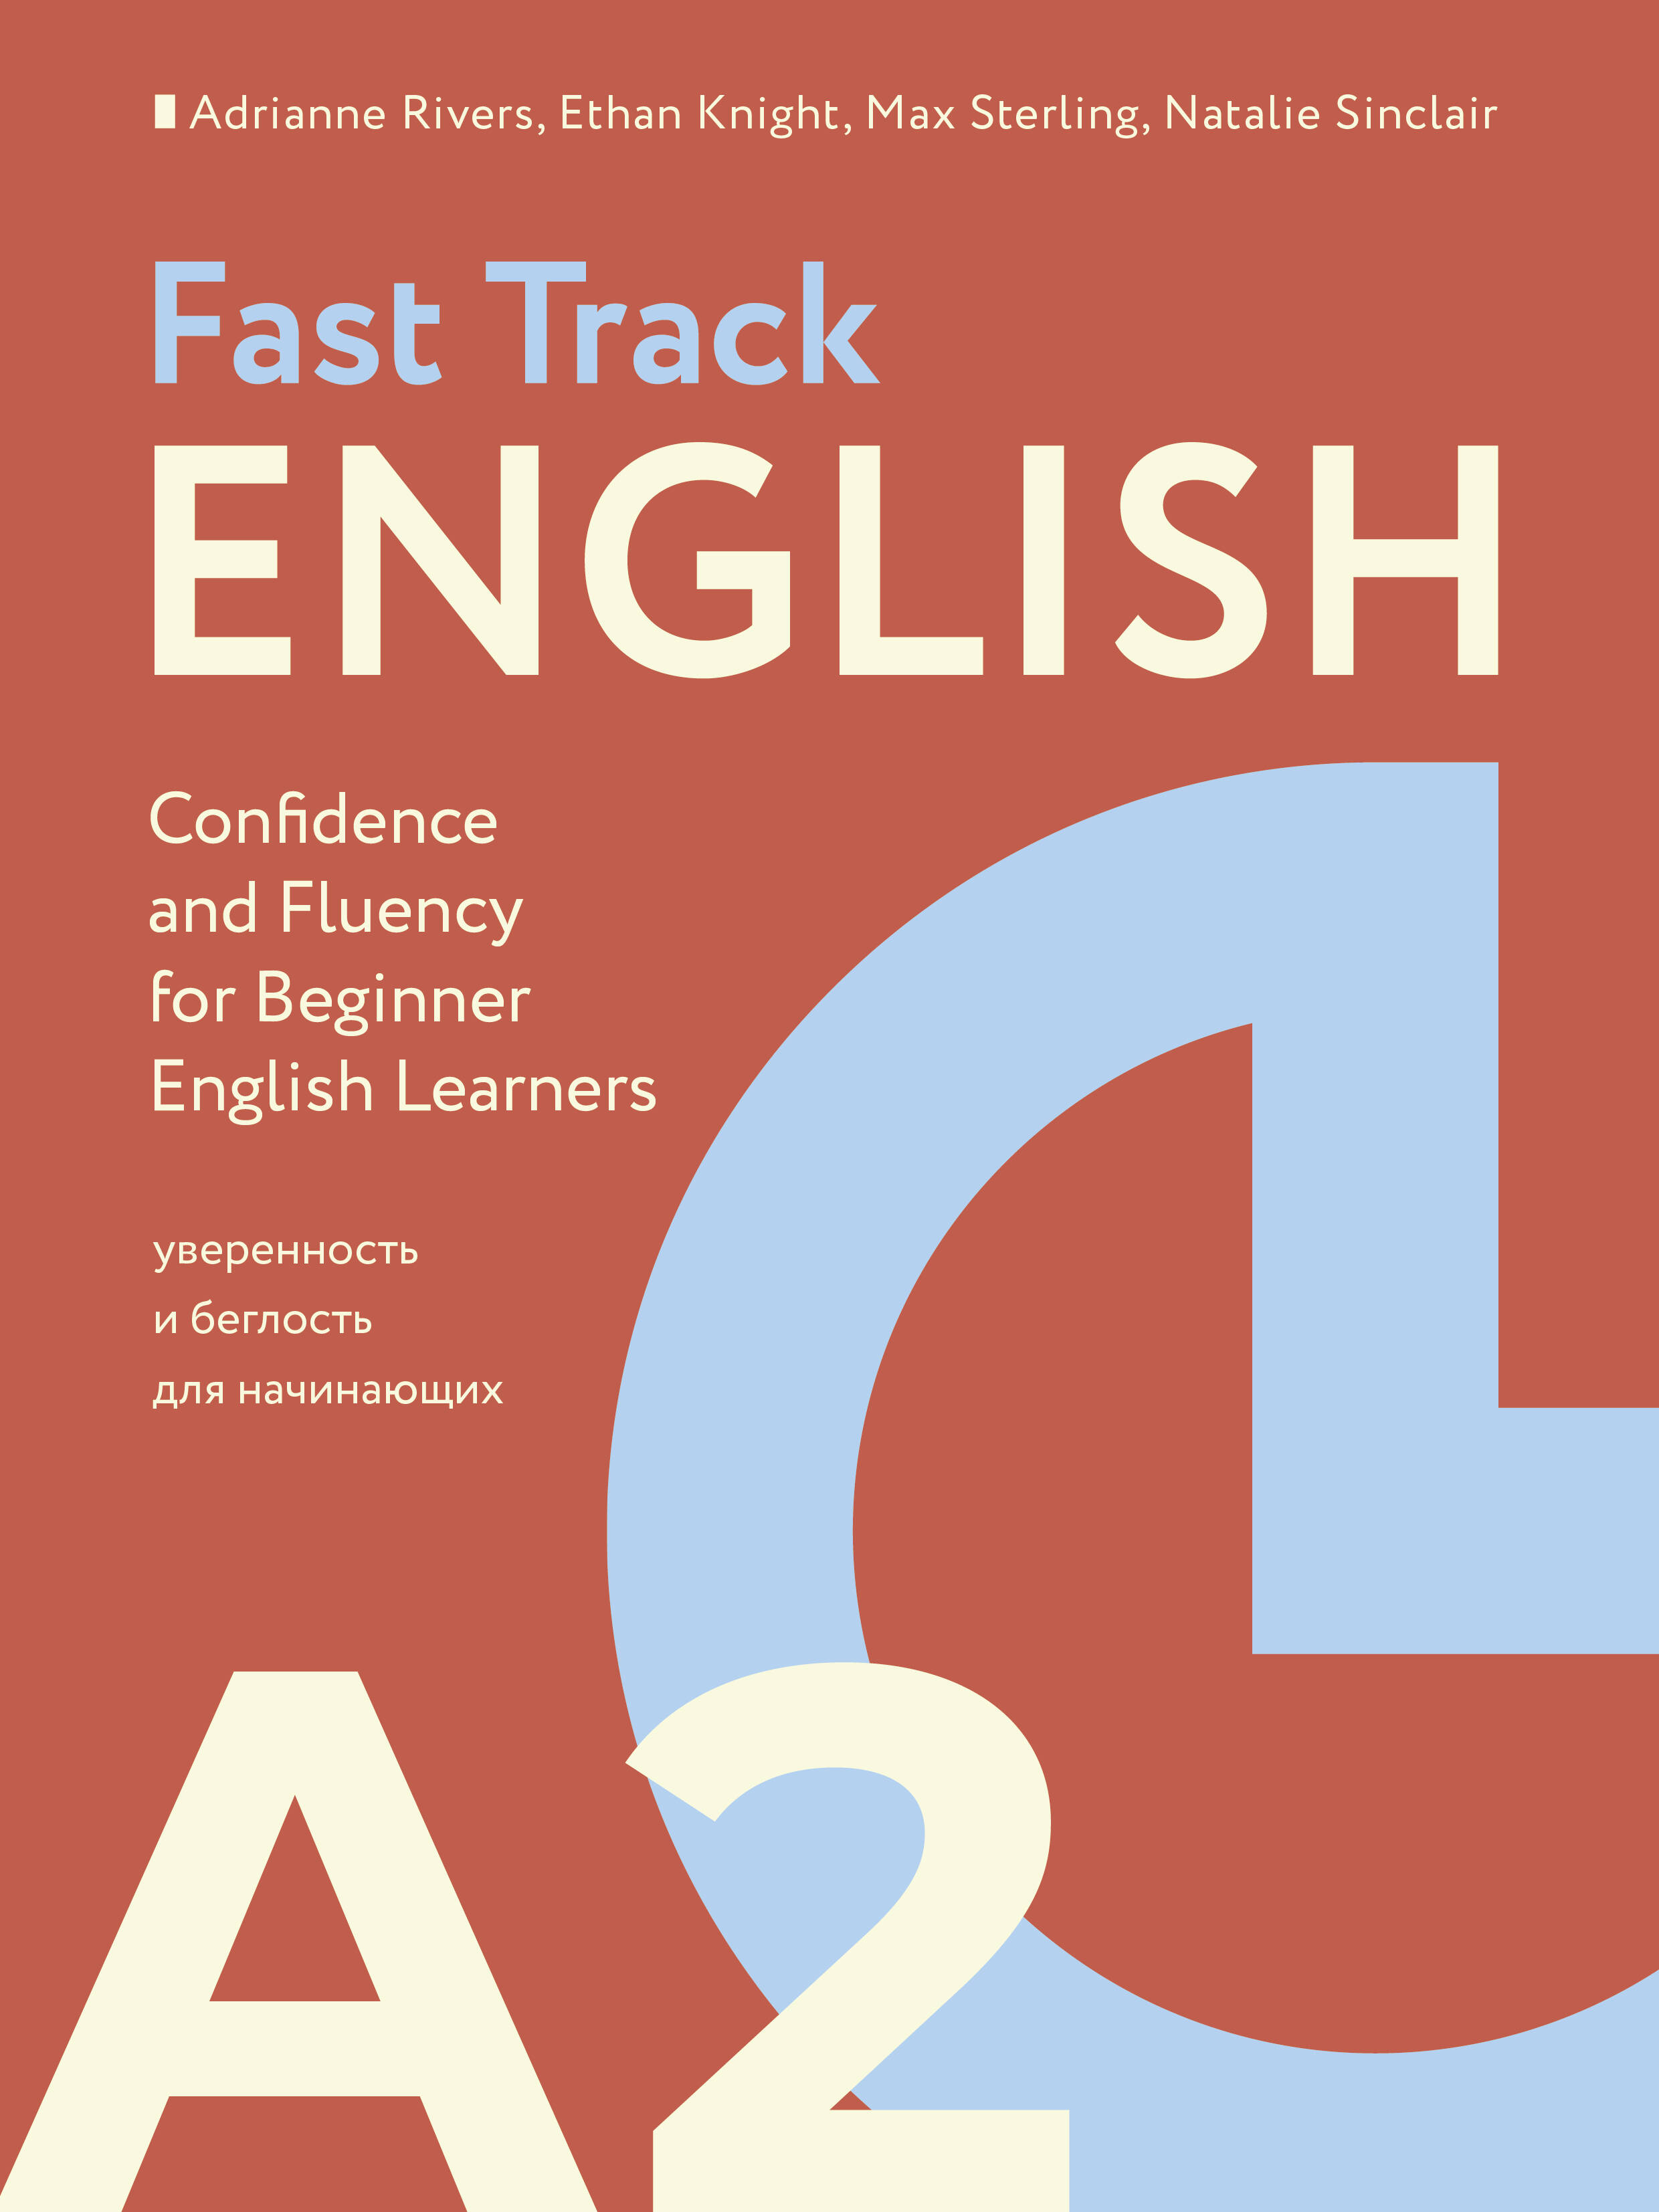 Риверс Эдриан, Найт Итан, Стерлинг Макс Fast Track English A2: уверенность и беглость для начинающих (Building Confidence and Fluency for Beginner English Learners)